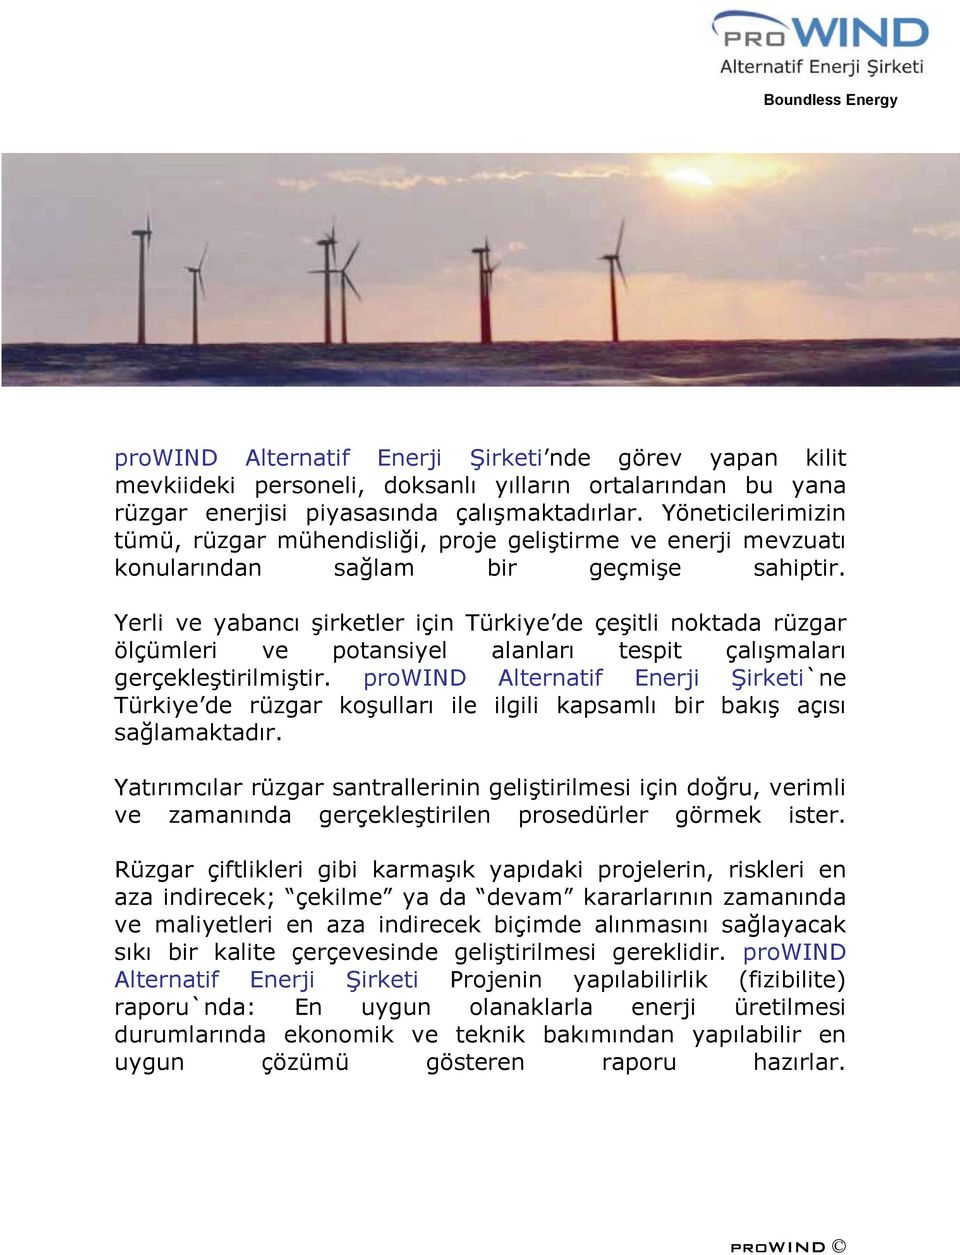 Yerli ve yabancı şirketler için Türkiye de çeşitli noktada rüzgar ölçümleri ve potansiyel alanları tespit çalışmaları gerçekleştirilmiştir.